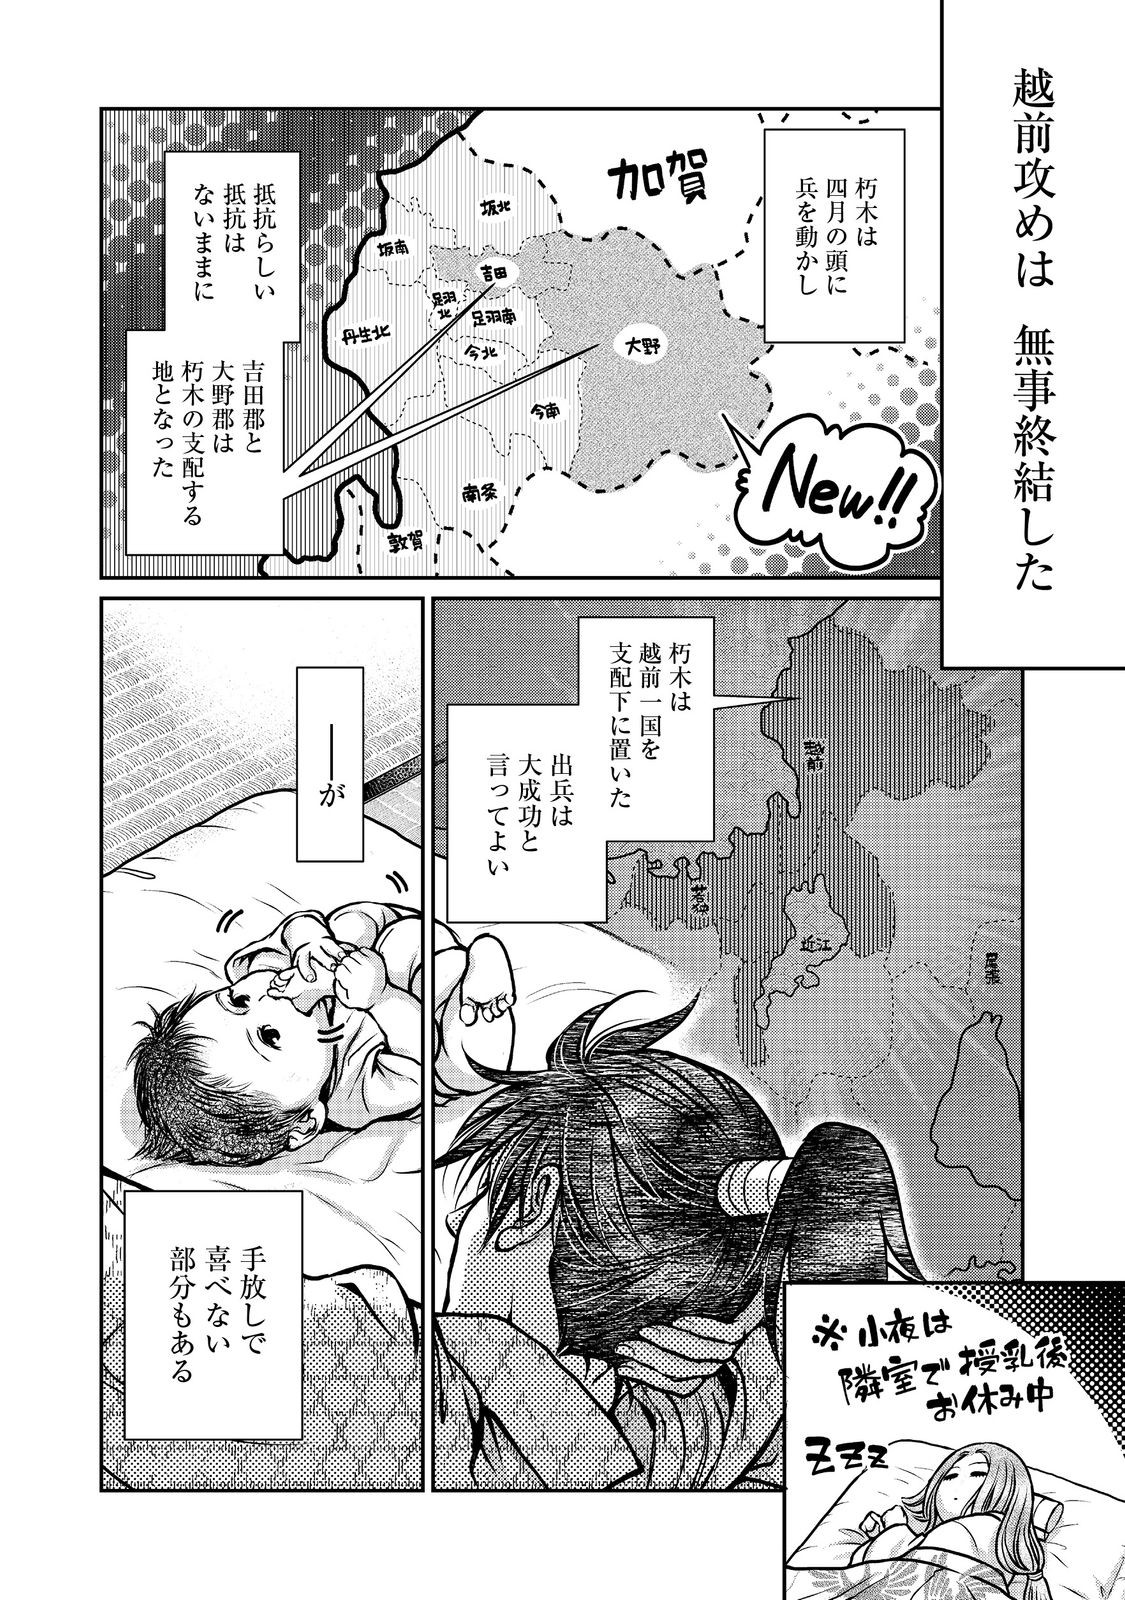 Afumi no Umi – Minamo ga Yureru Toki - Chapter 38 - Page 2